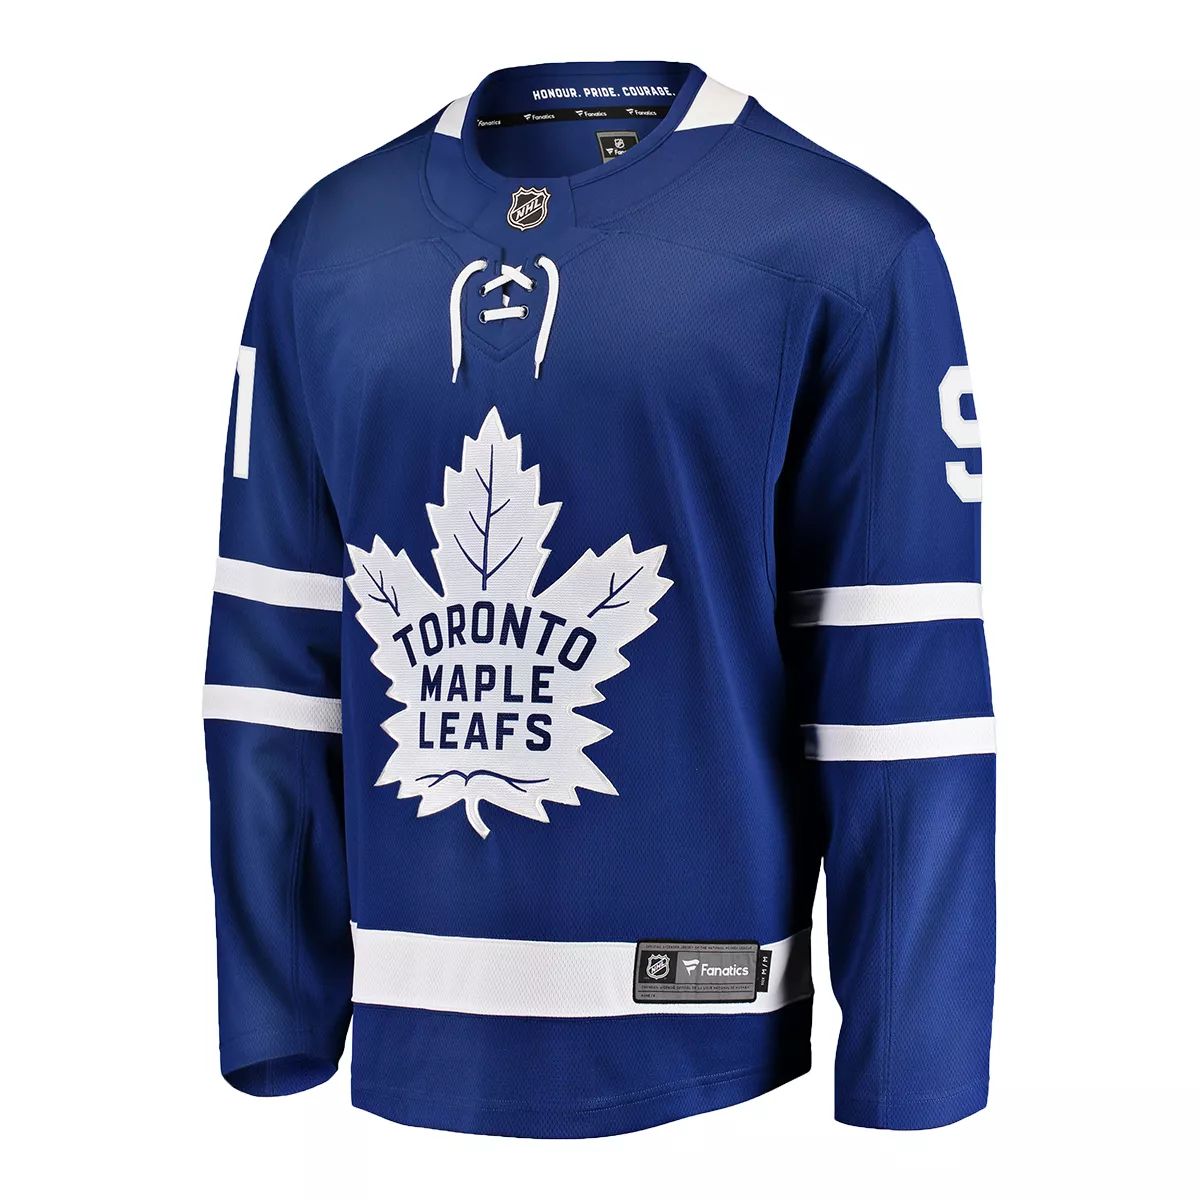 NHL Announces Uniform Deal With Fanatics